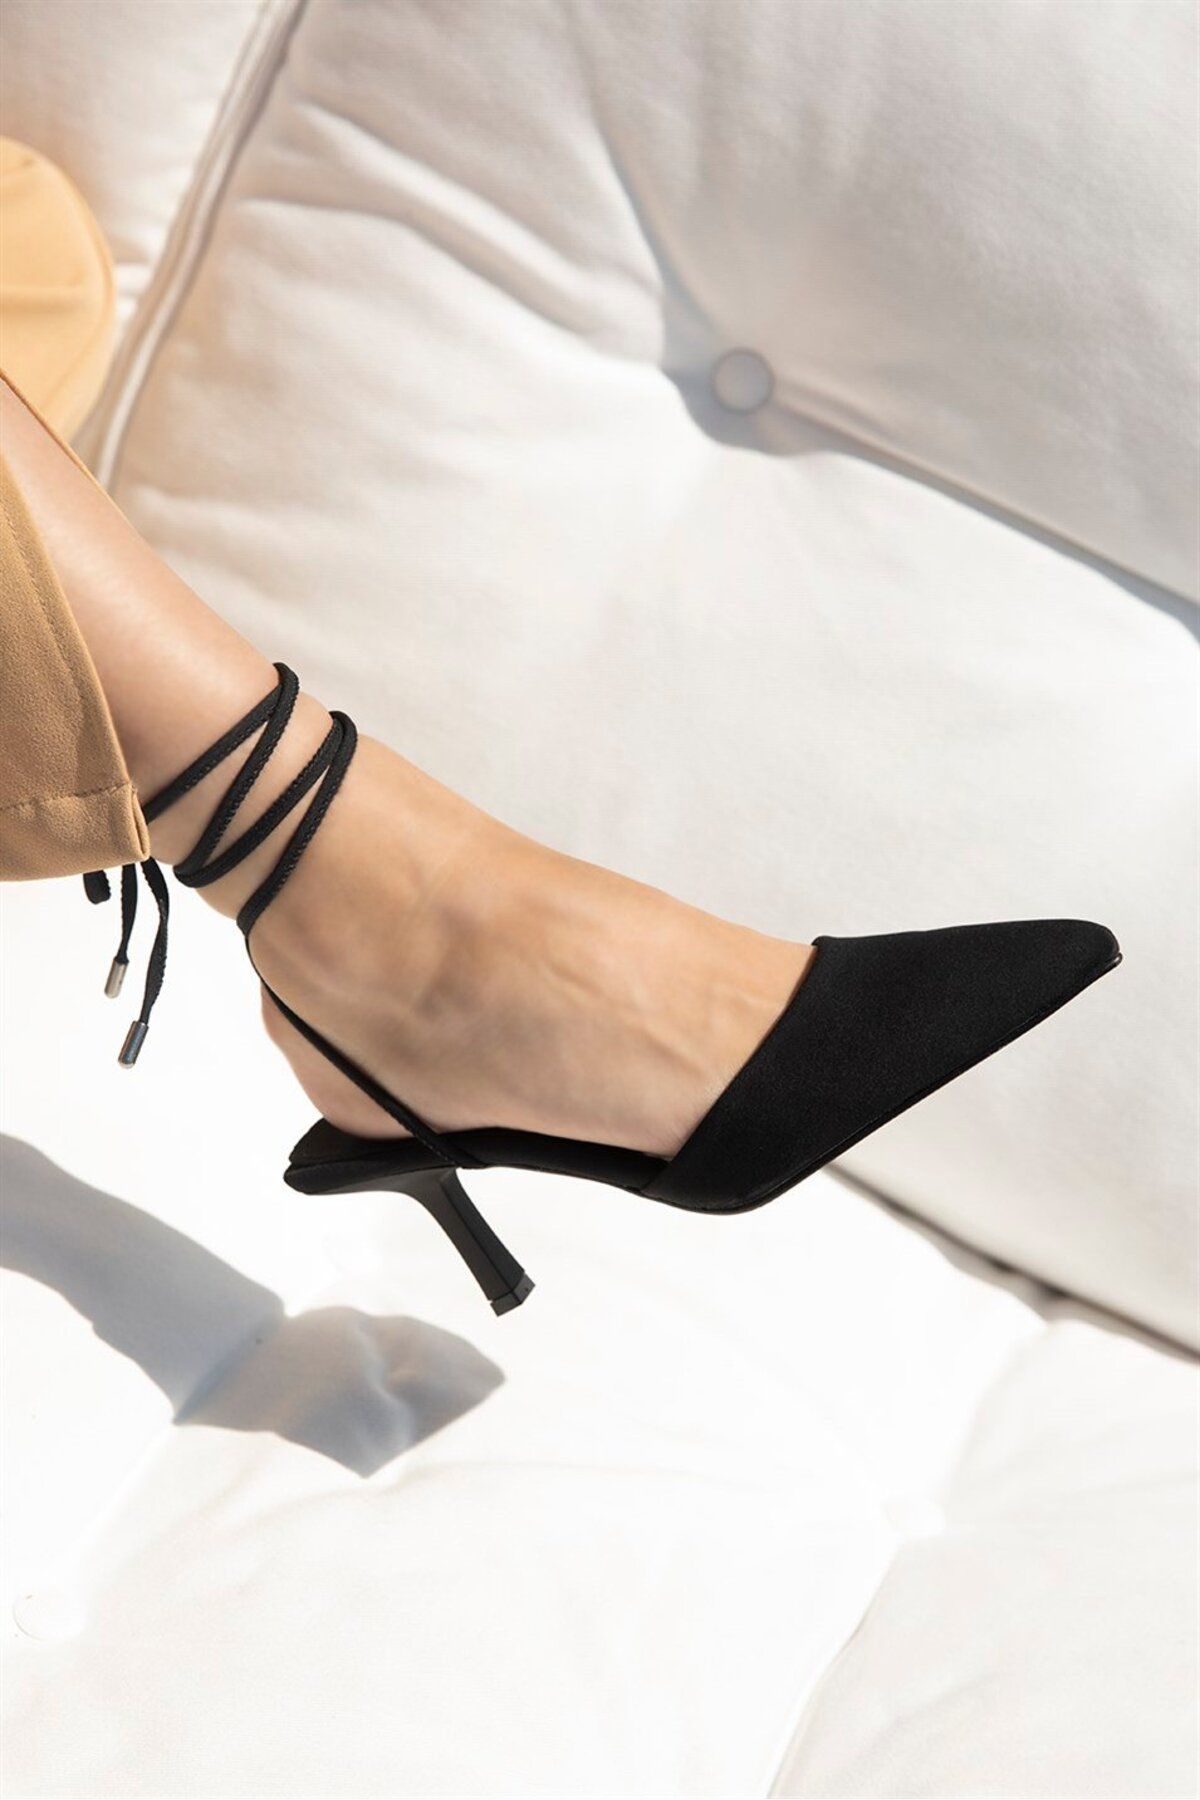 Straswans Jolla Kadın Bilekten Bağlamalı Topuklu Kumaş Sandalet Siyah